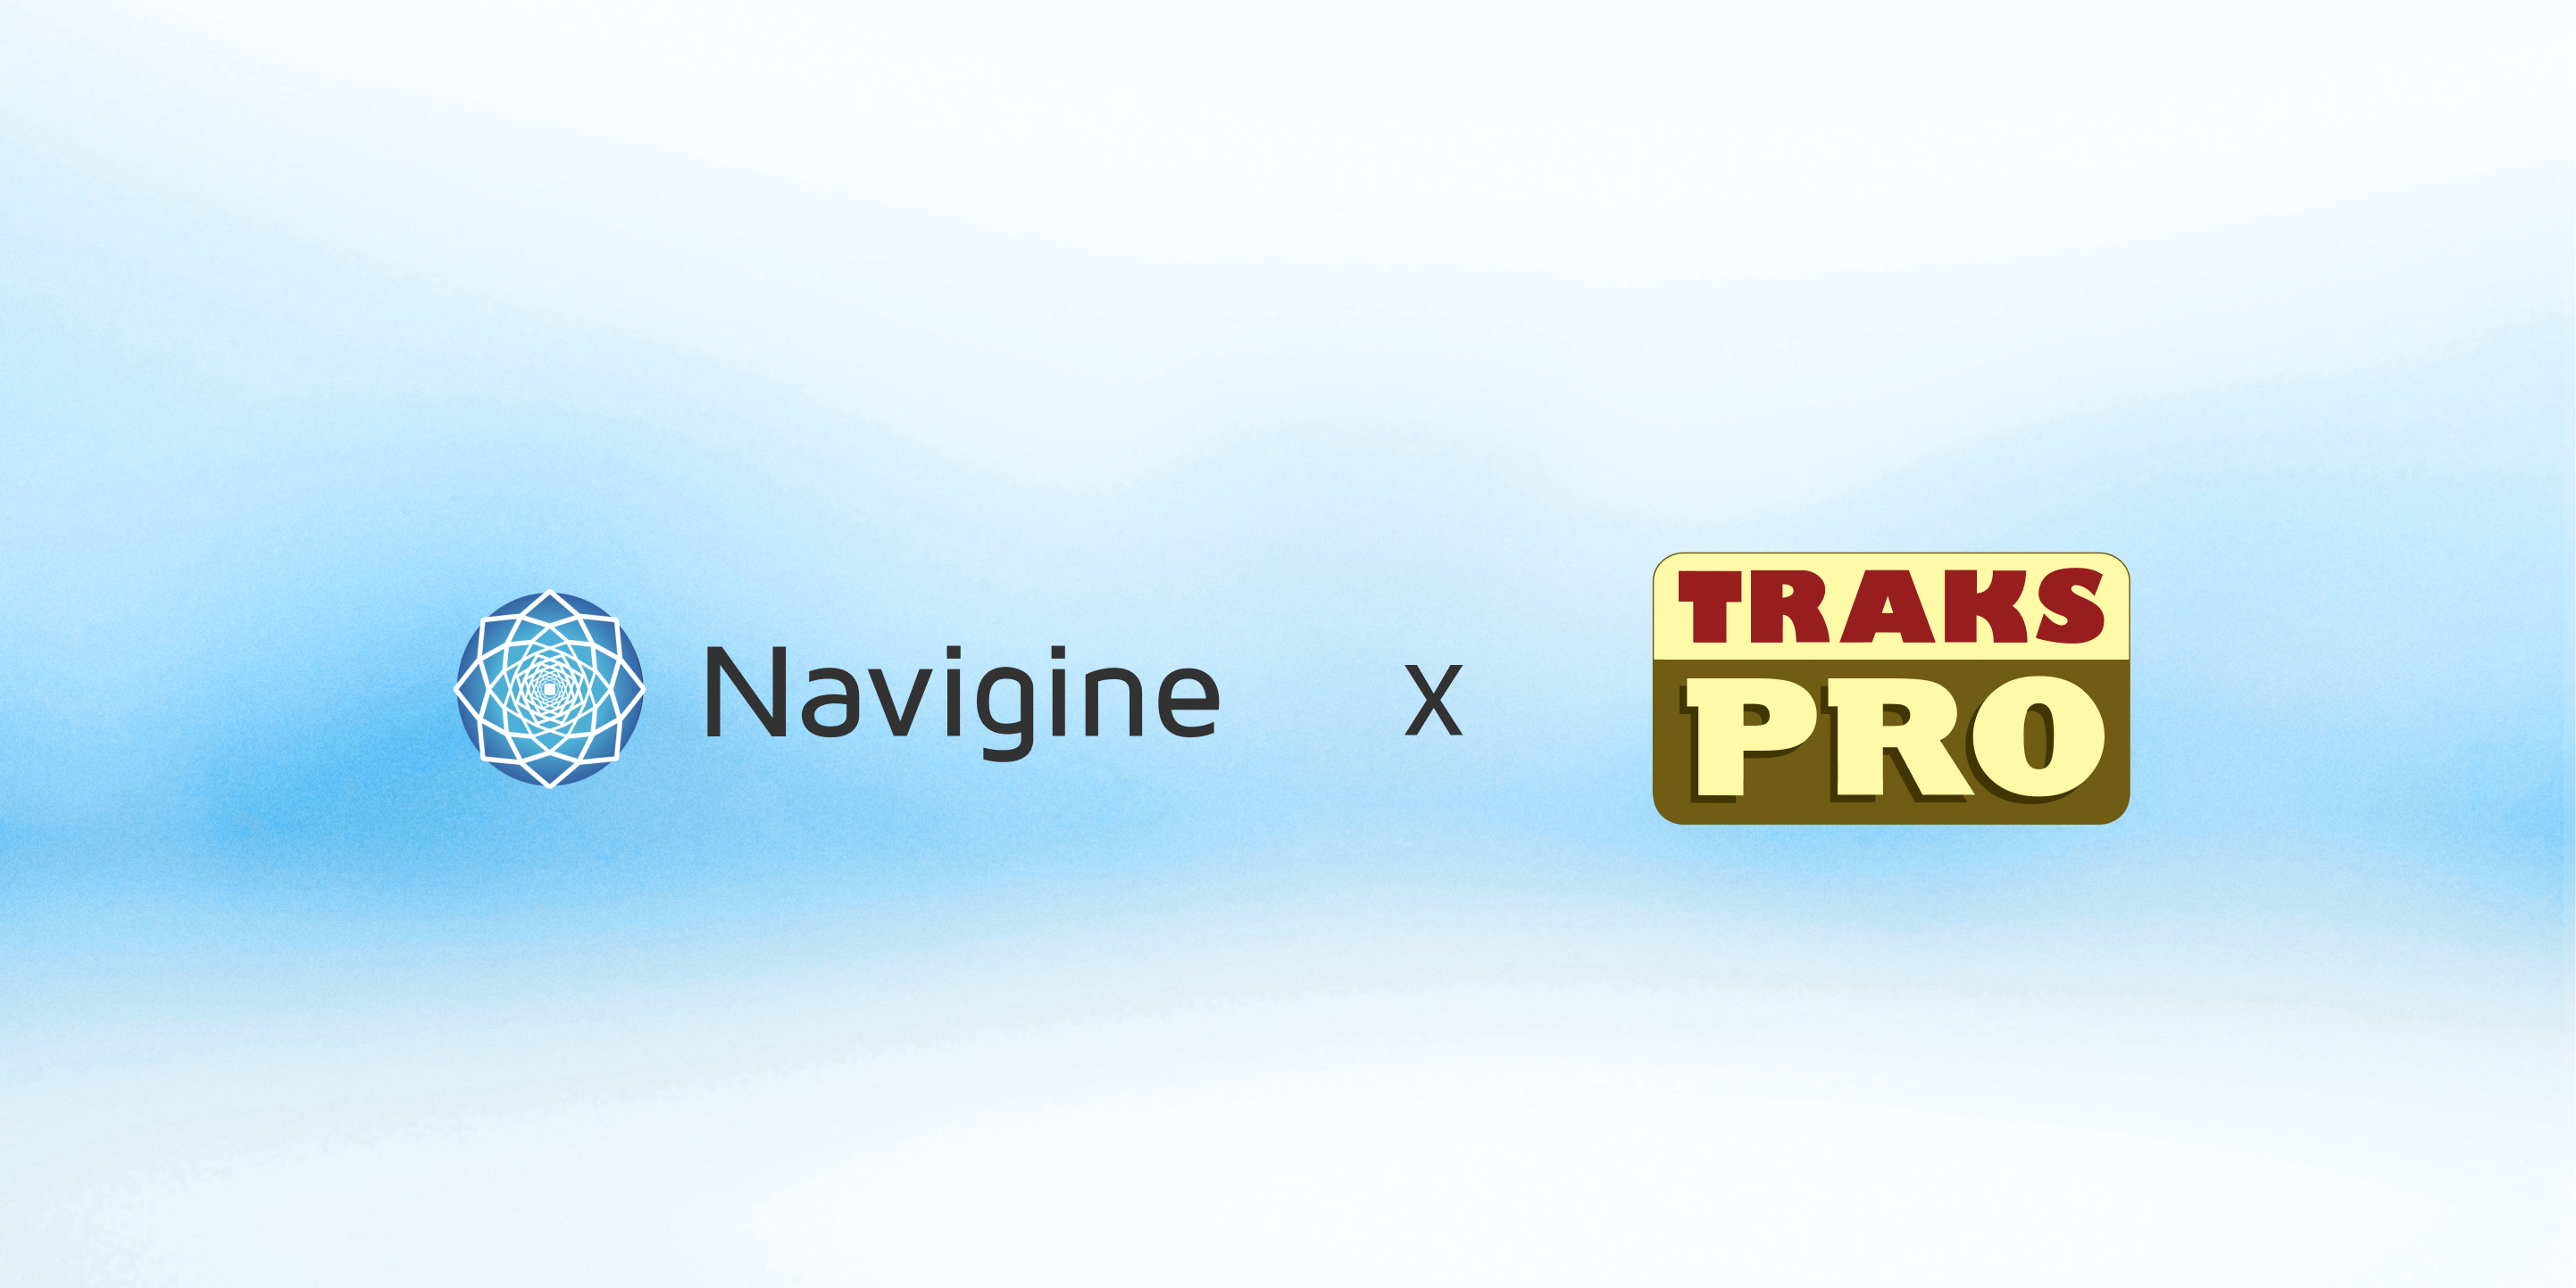 Navigine and TRAKS PRO